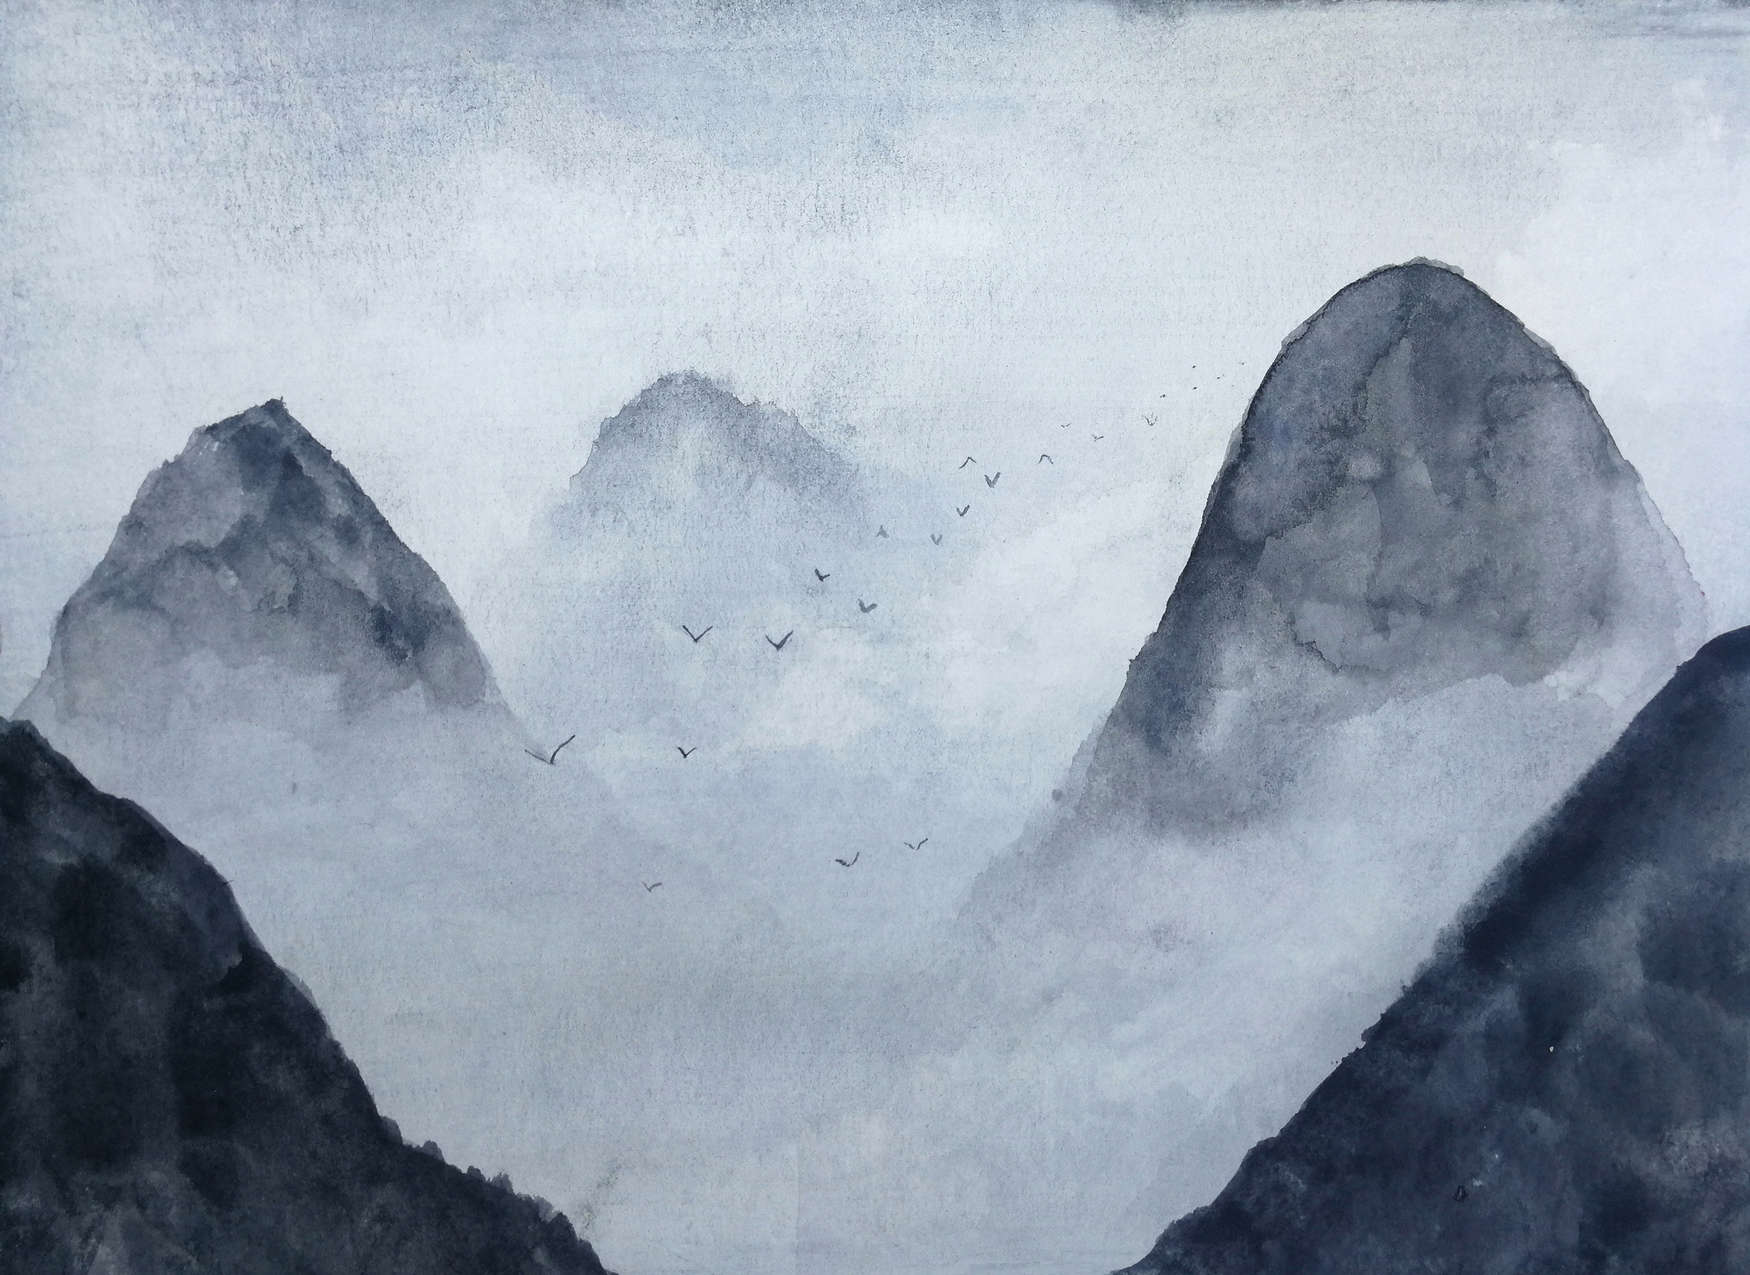             Watercolour Mountain Landscape Wallpaper - Grey, Black
        